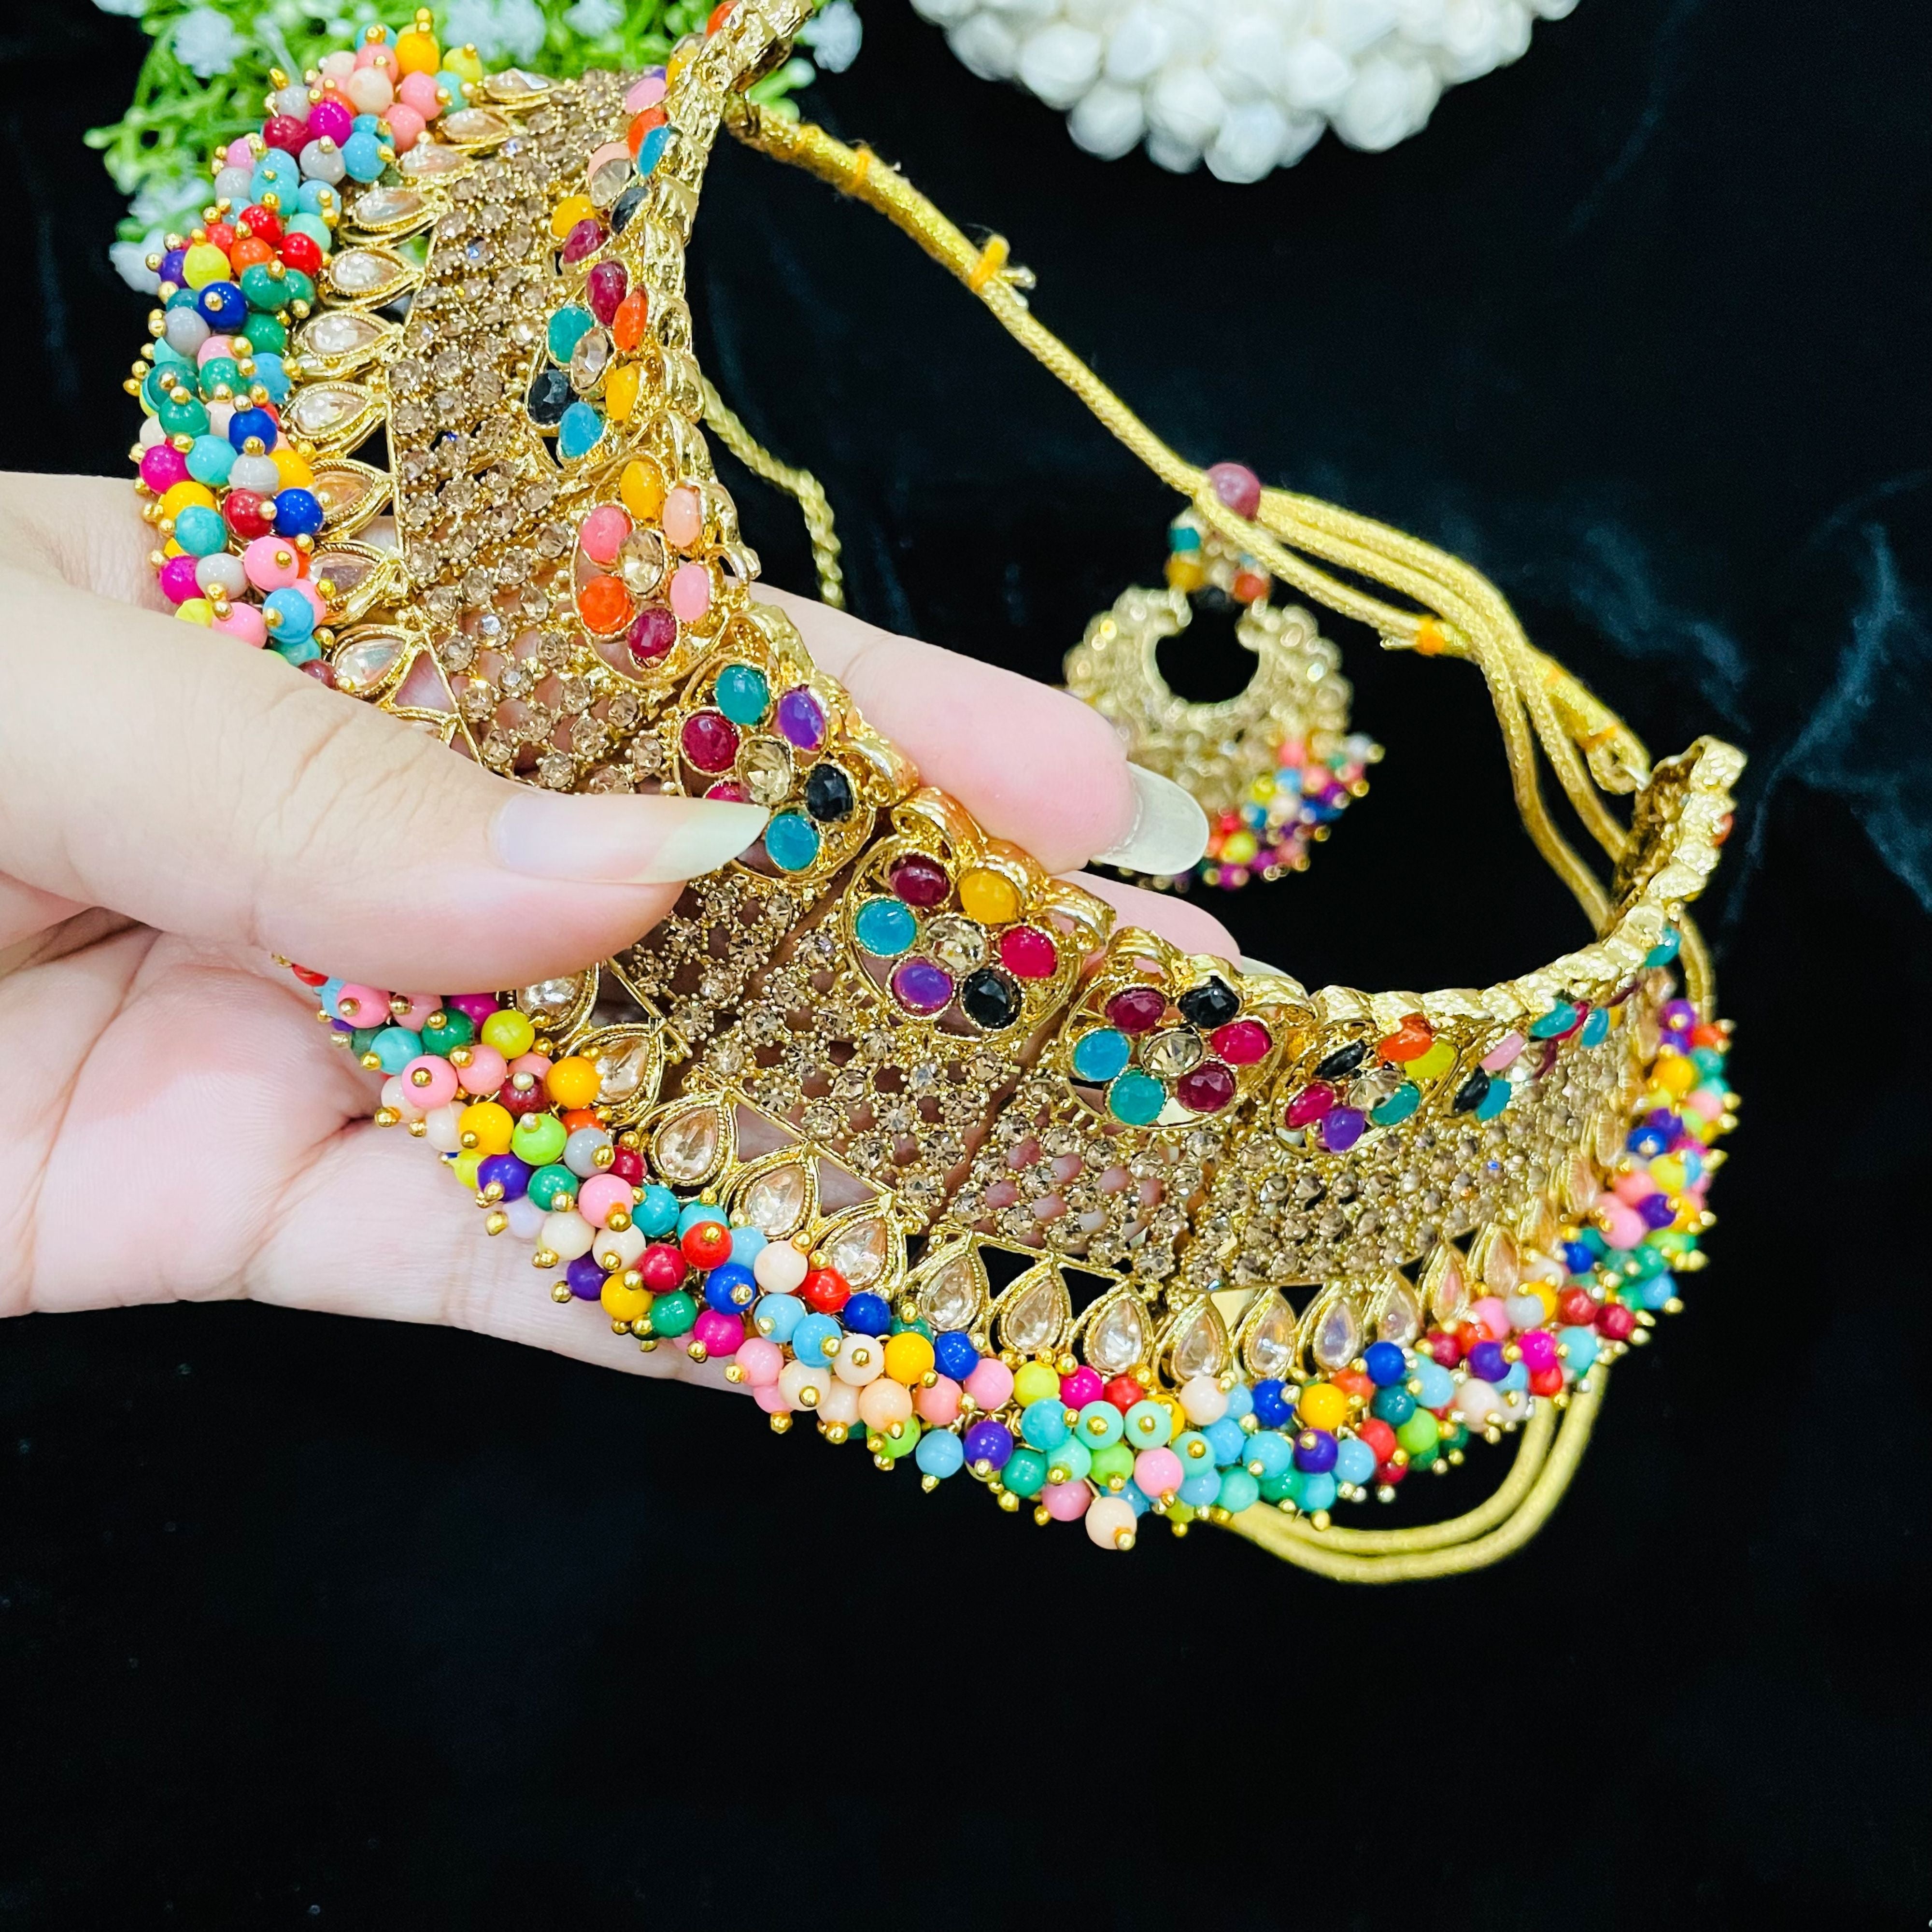 Multi Color Bridal Choker Necklace Set